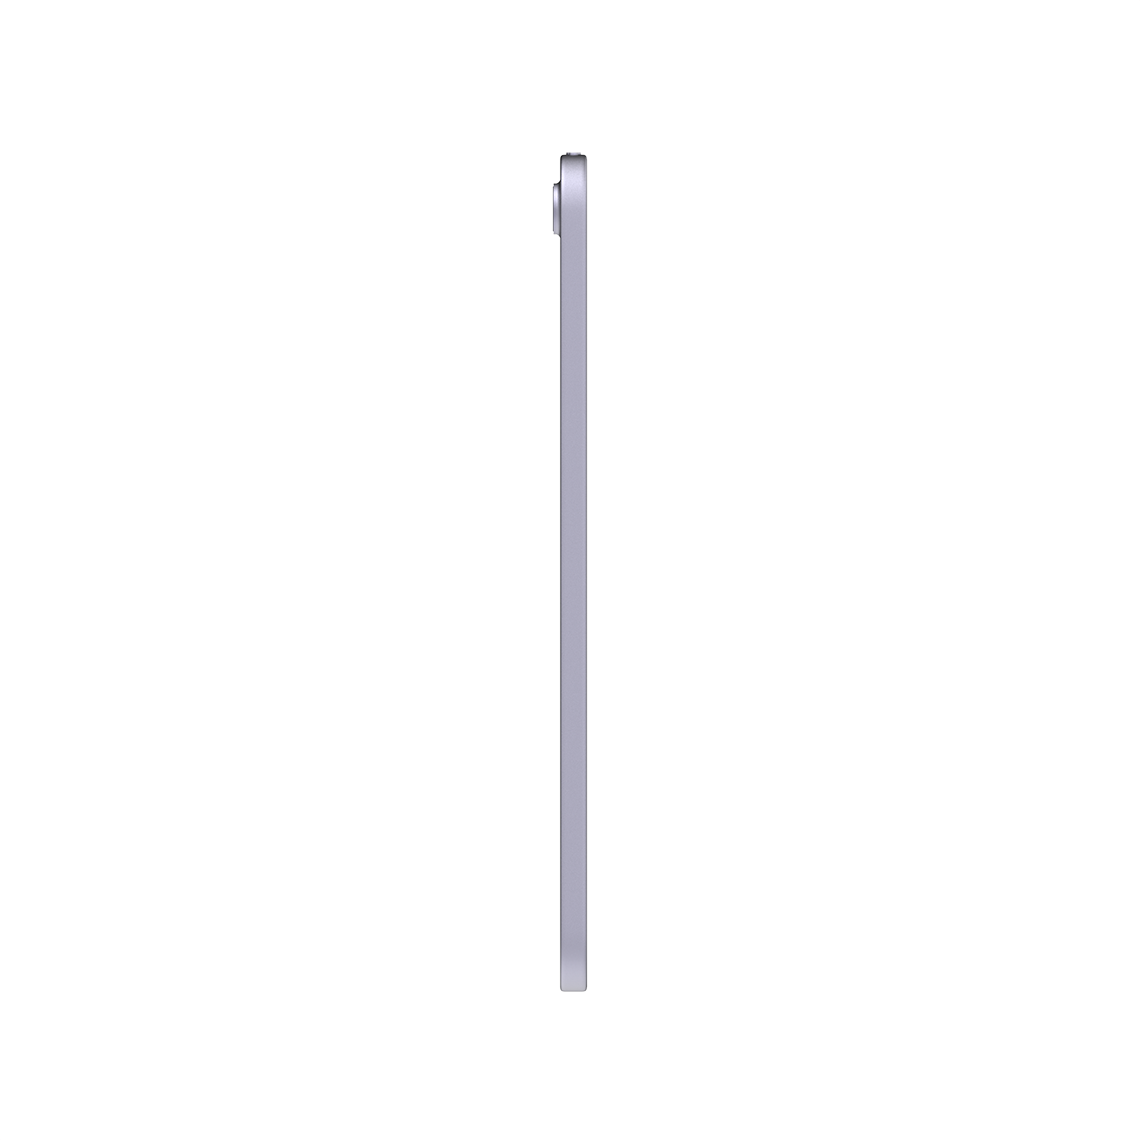 Apple iPad Mini 8.3-inch 6th Generation - Purple - 64GB, Wi-Fi + Cellular, Grade A